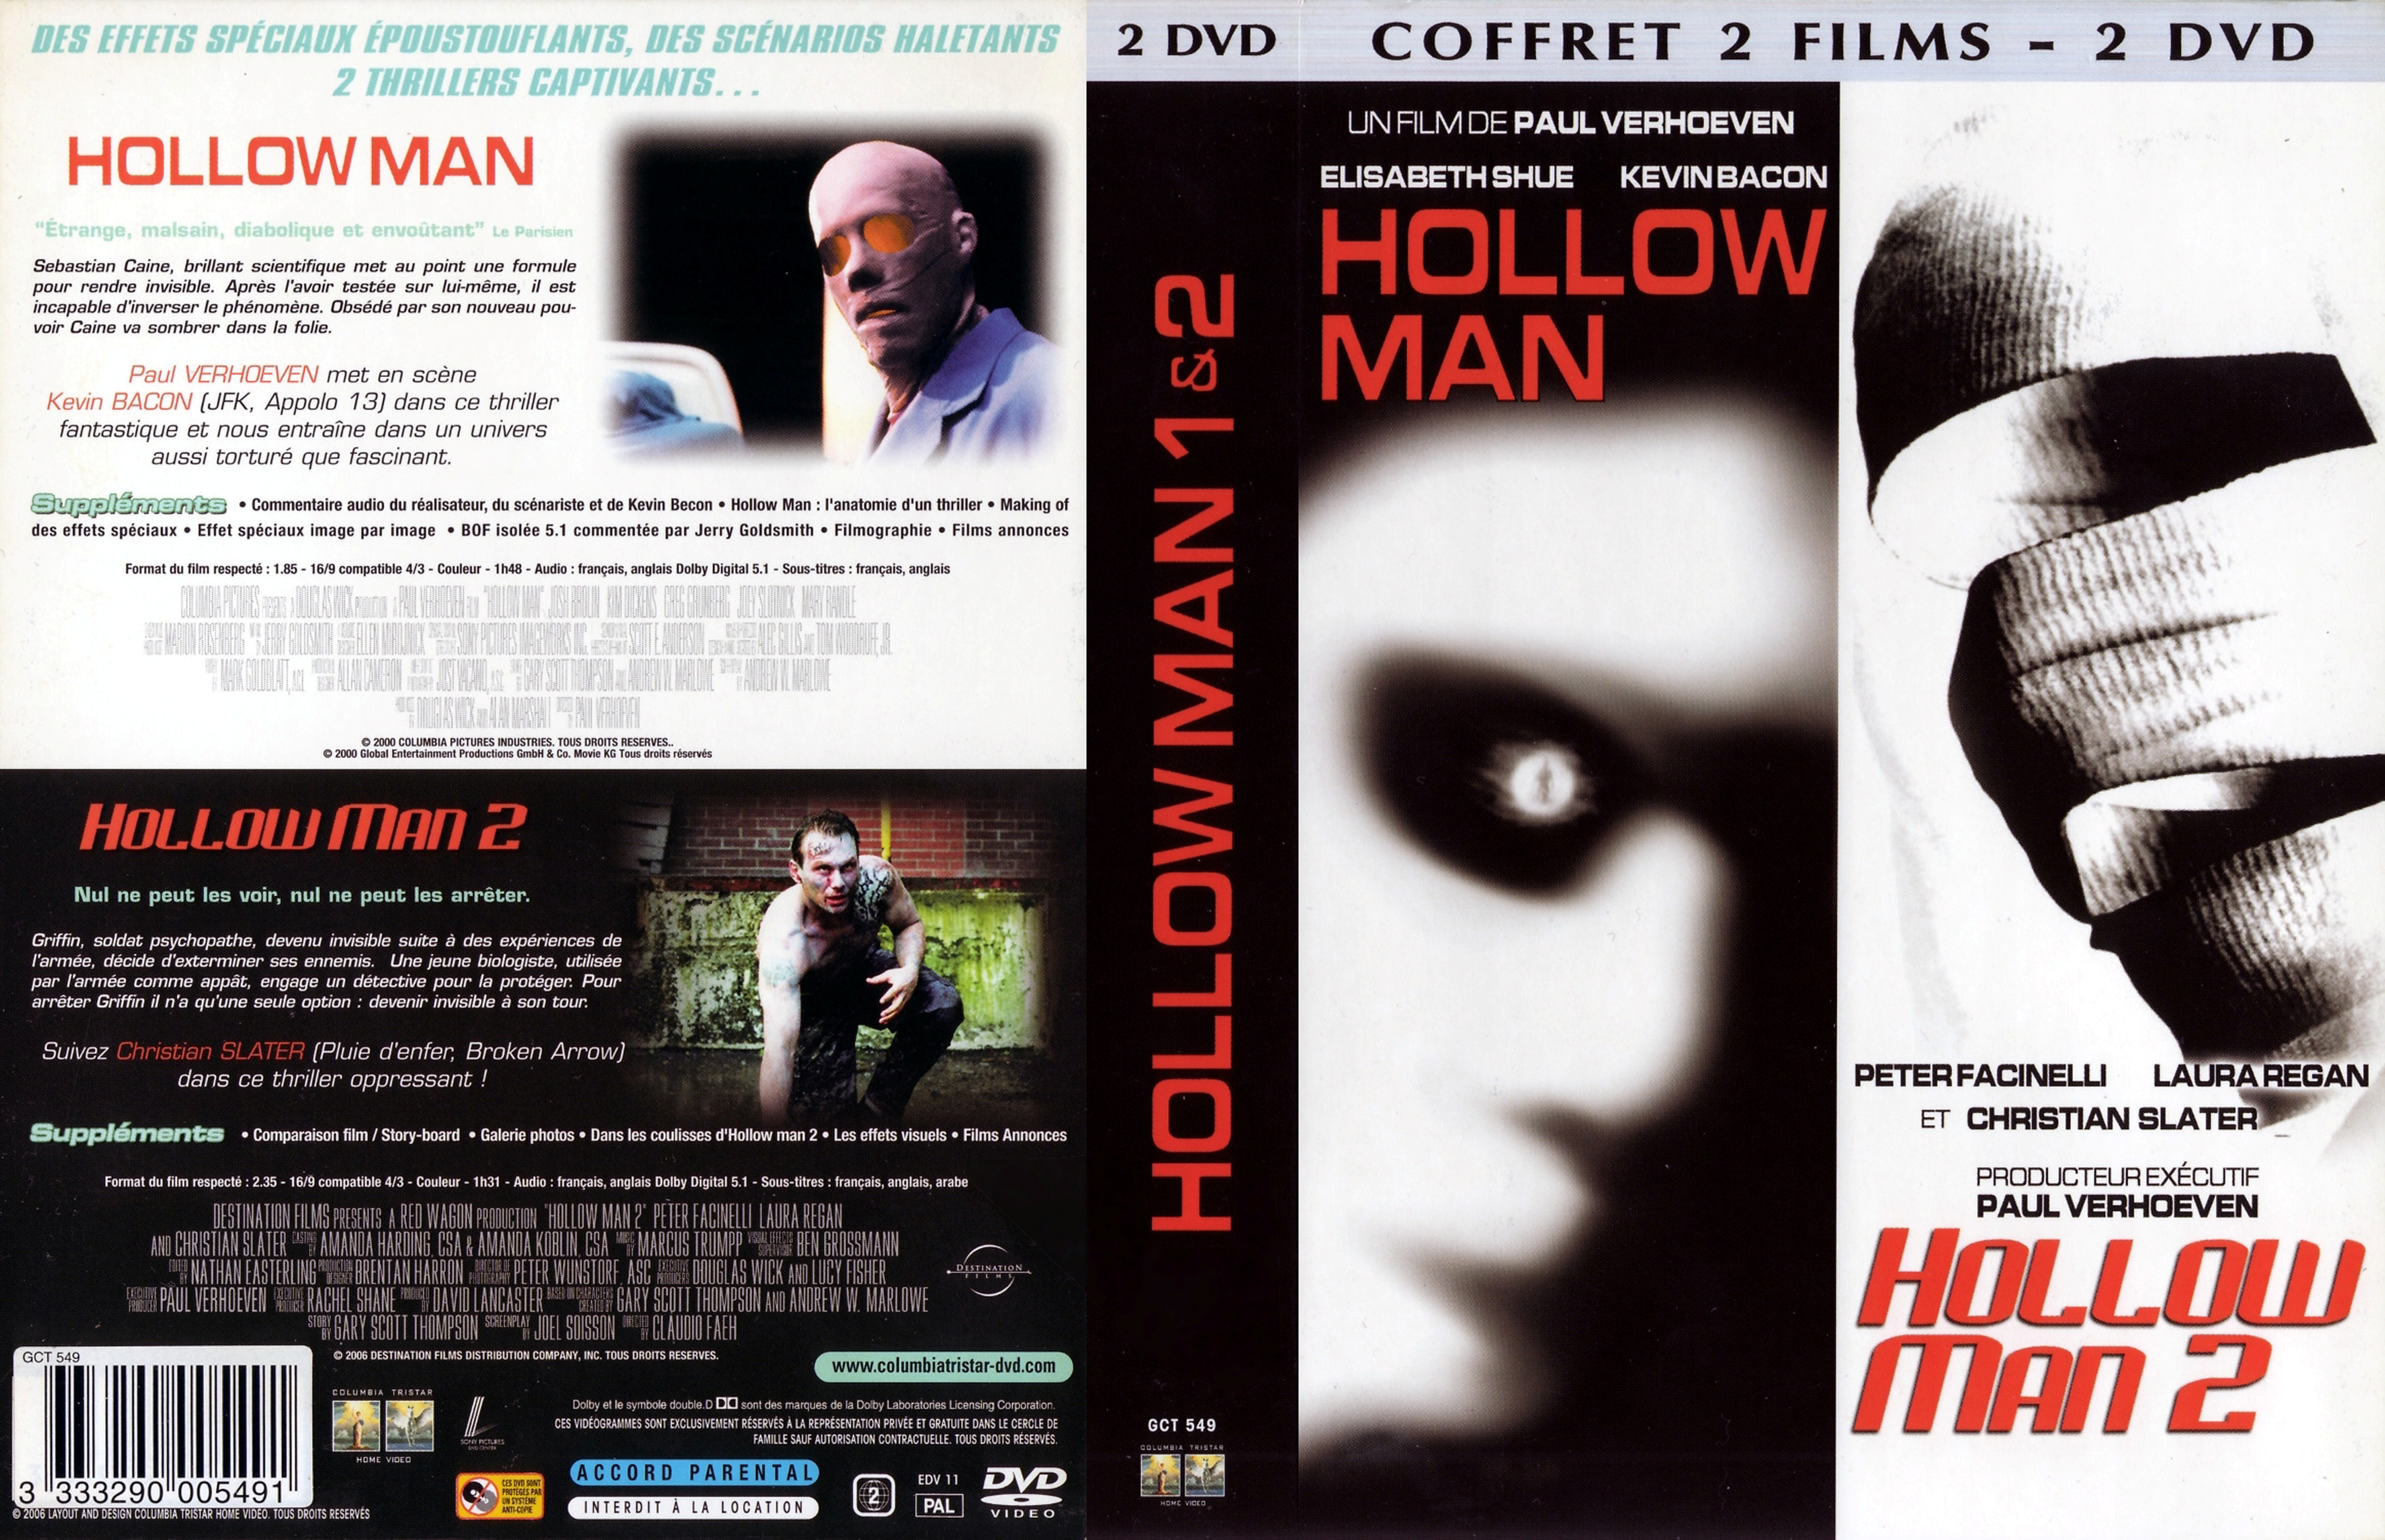 Jaquette DVD Hollow man 1 et 2 COFFRET